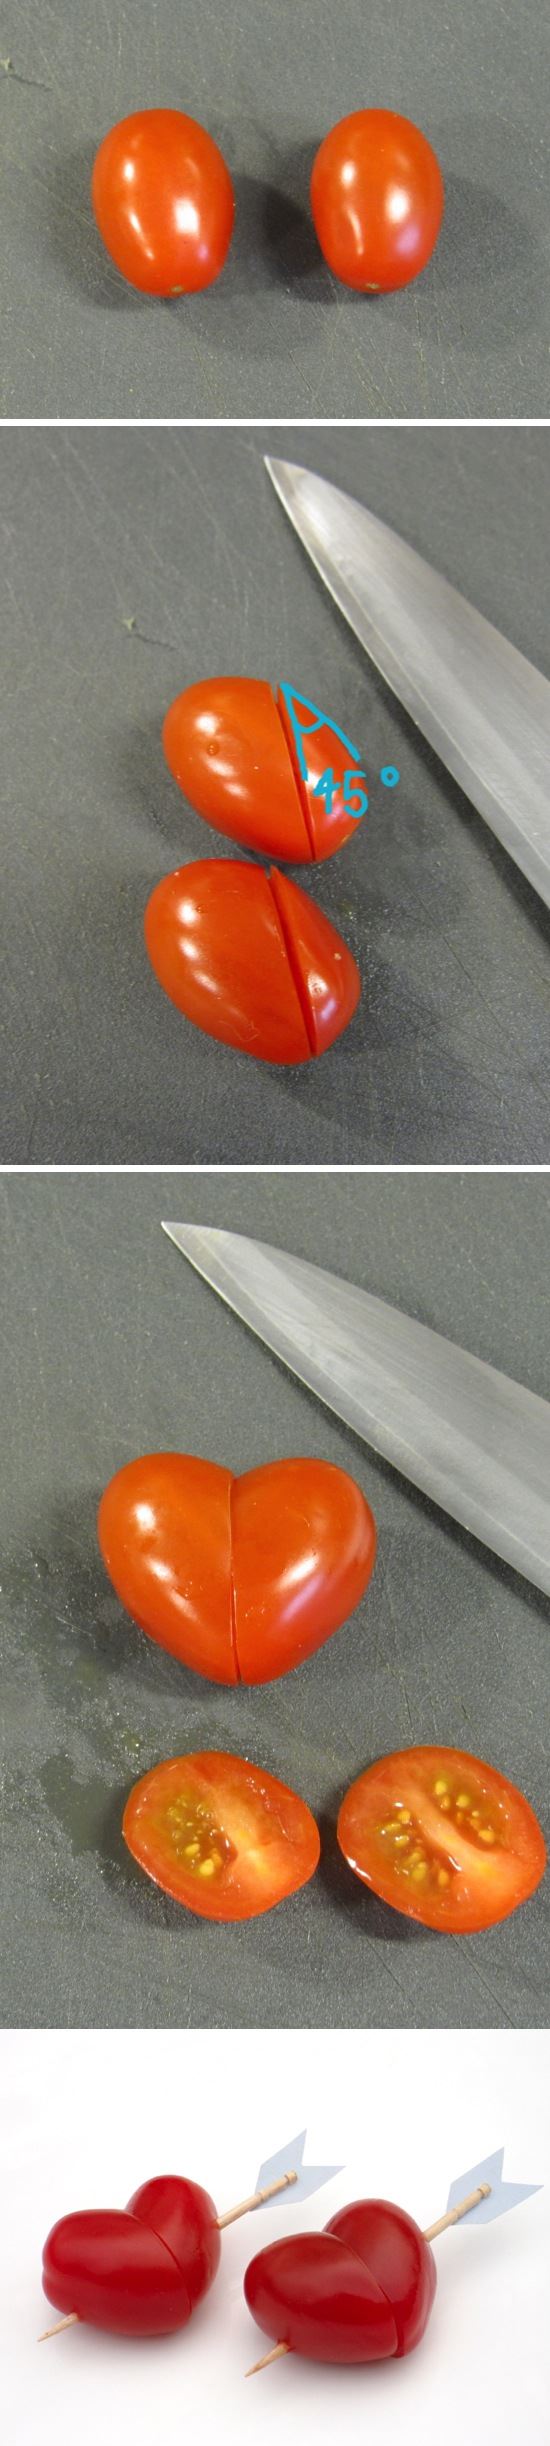 【キャラ弁の小技】「矢で射抜かれたハート型のトマト」を簡単に作る方法